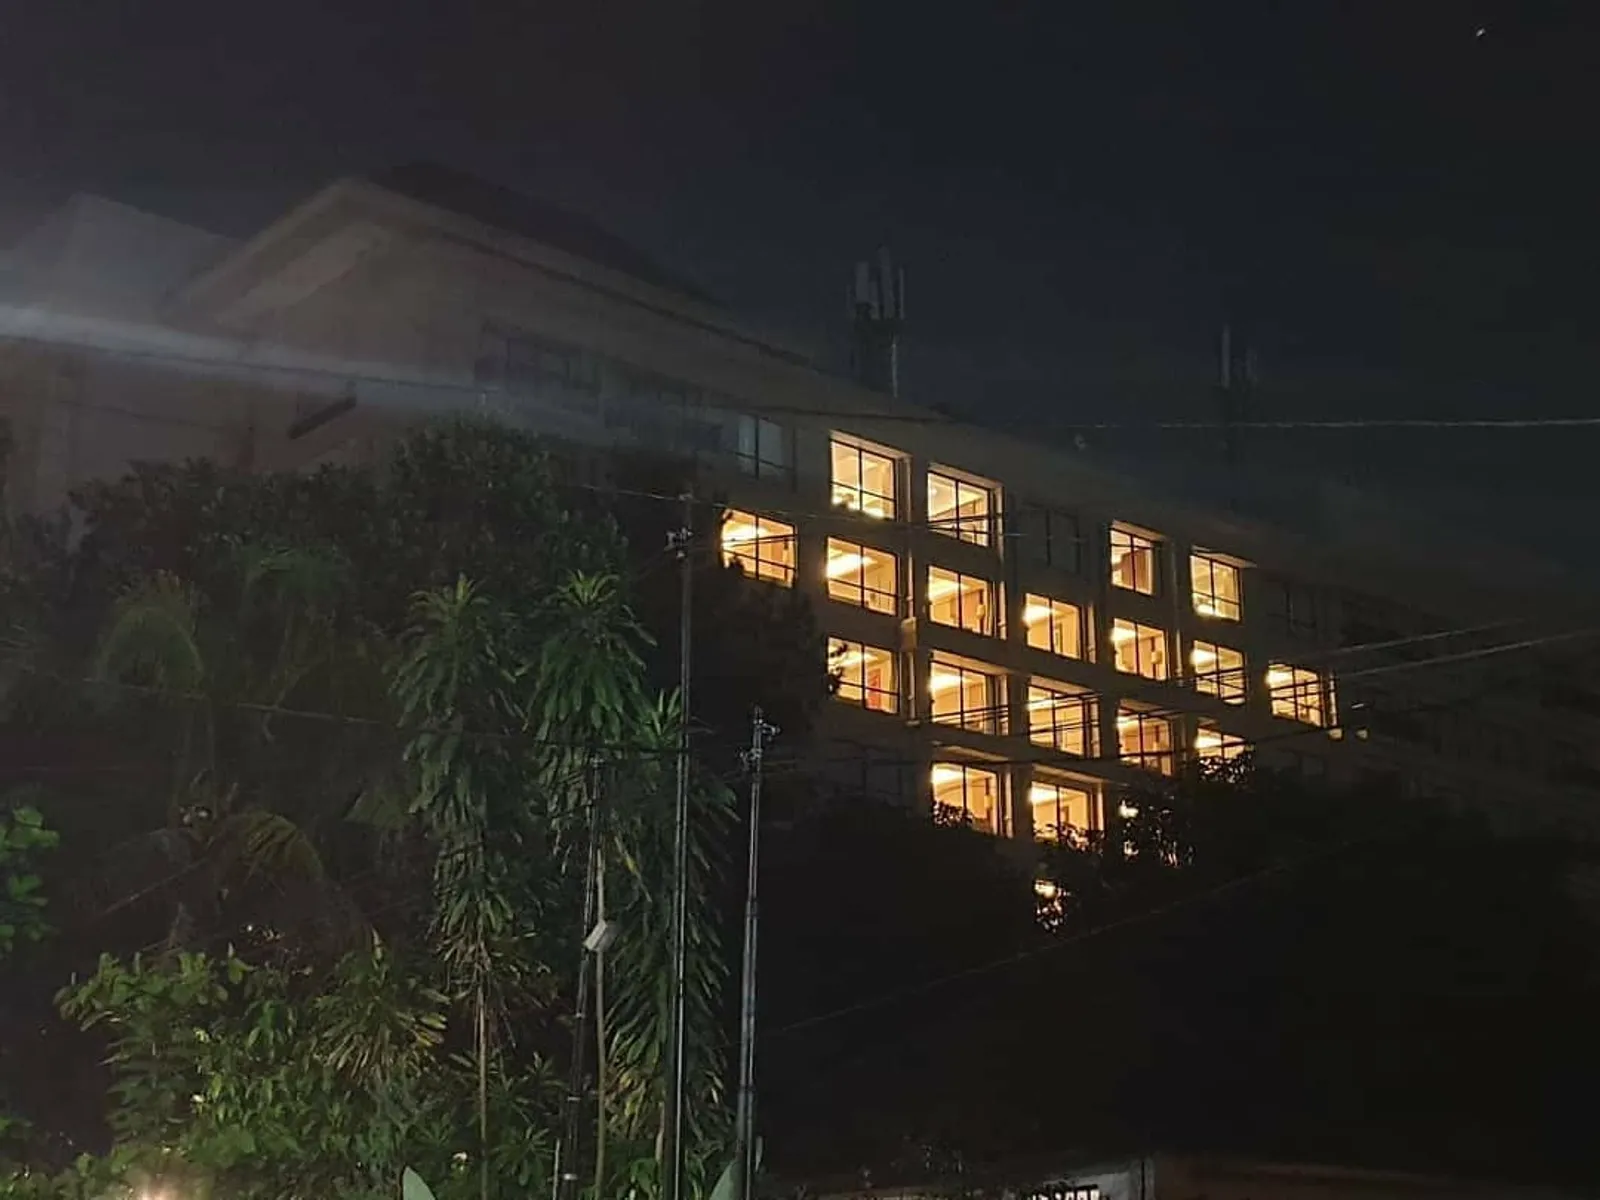 #FromJogjawithLove, Hiasi Malam Yogyakarta dengan Lampu Berbentuk Hati